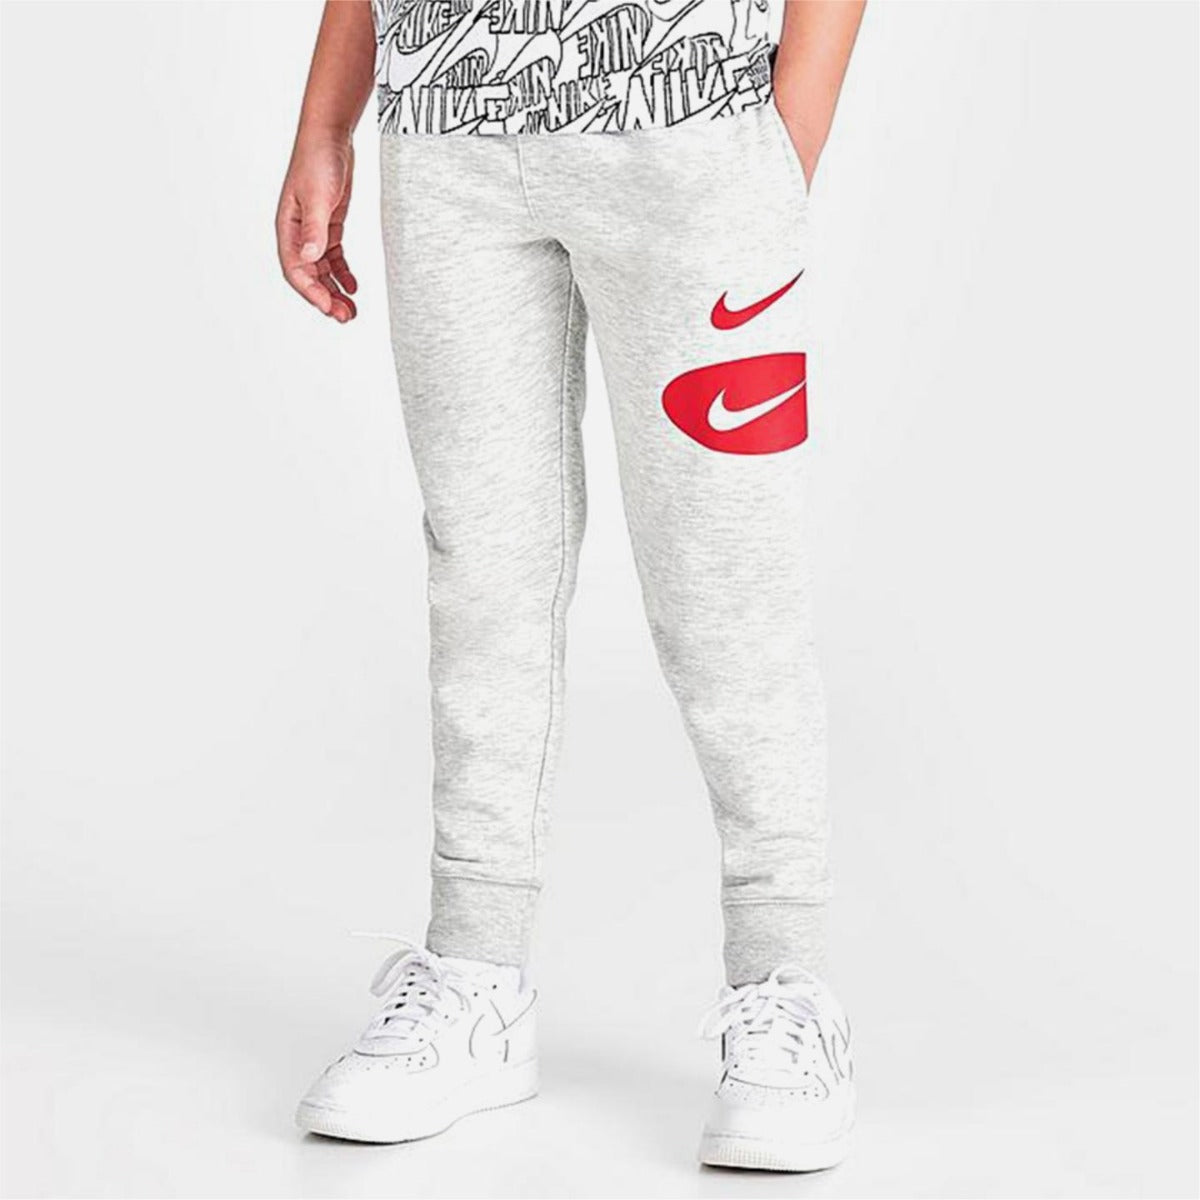 Nike - Tuque 2-4 ans Garçon gris et rouge